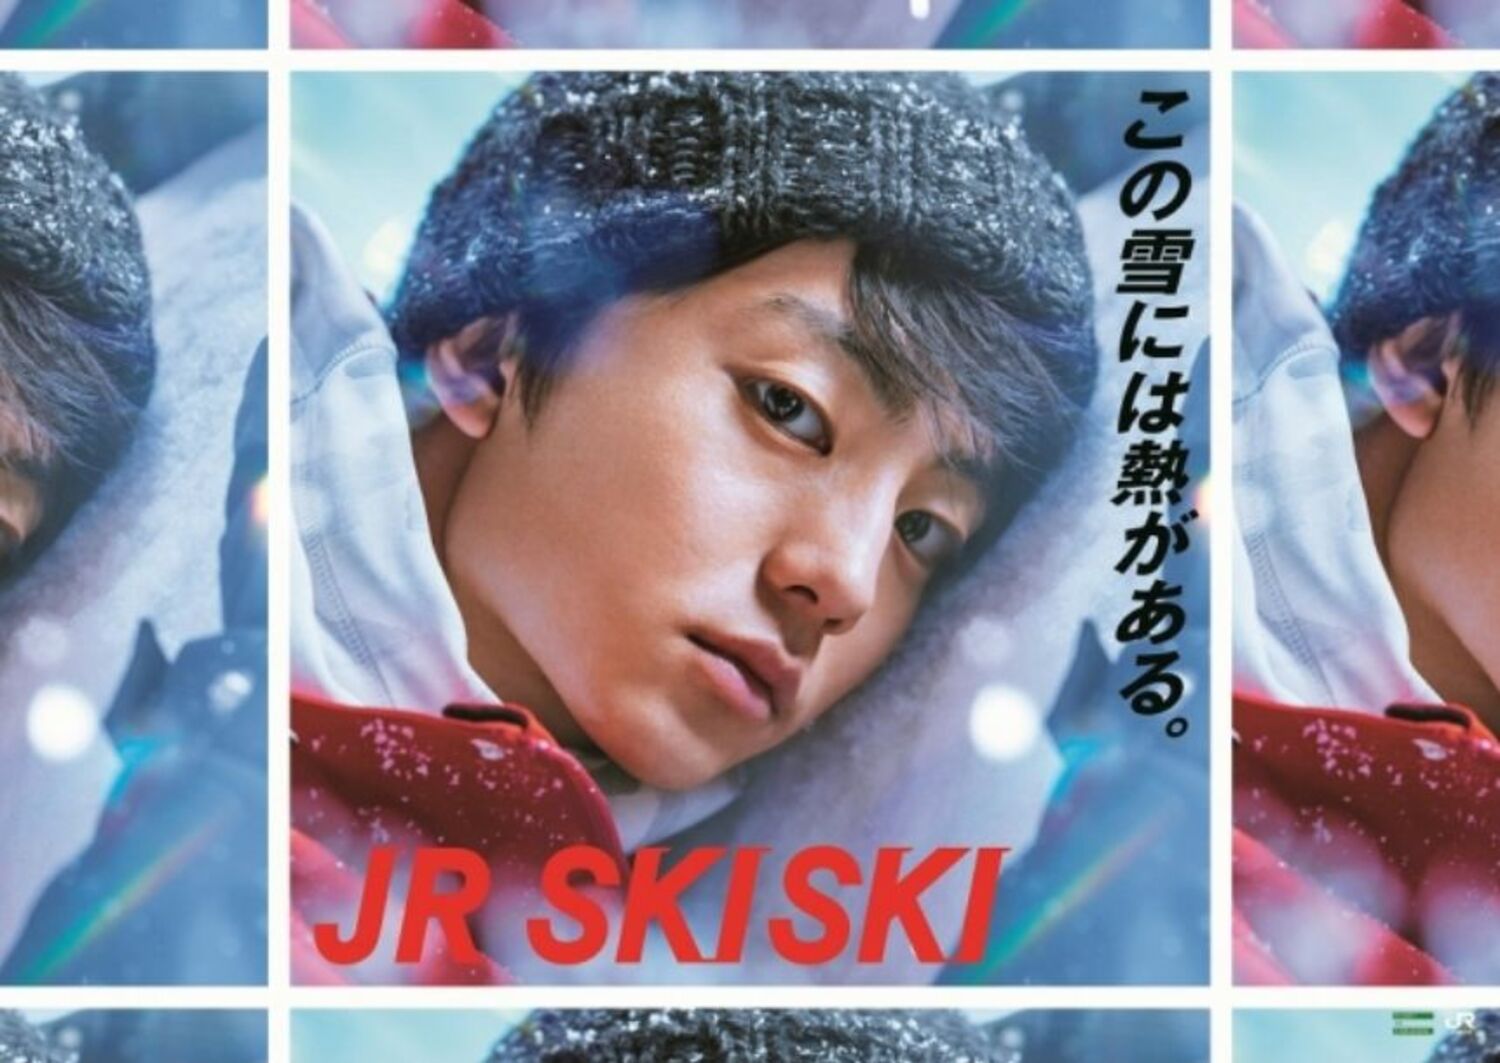 「JR SKISKI 2018-19キャンペーン」ポスター